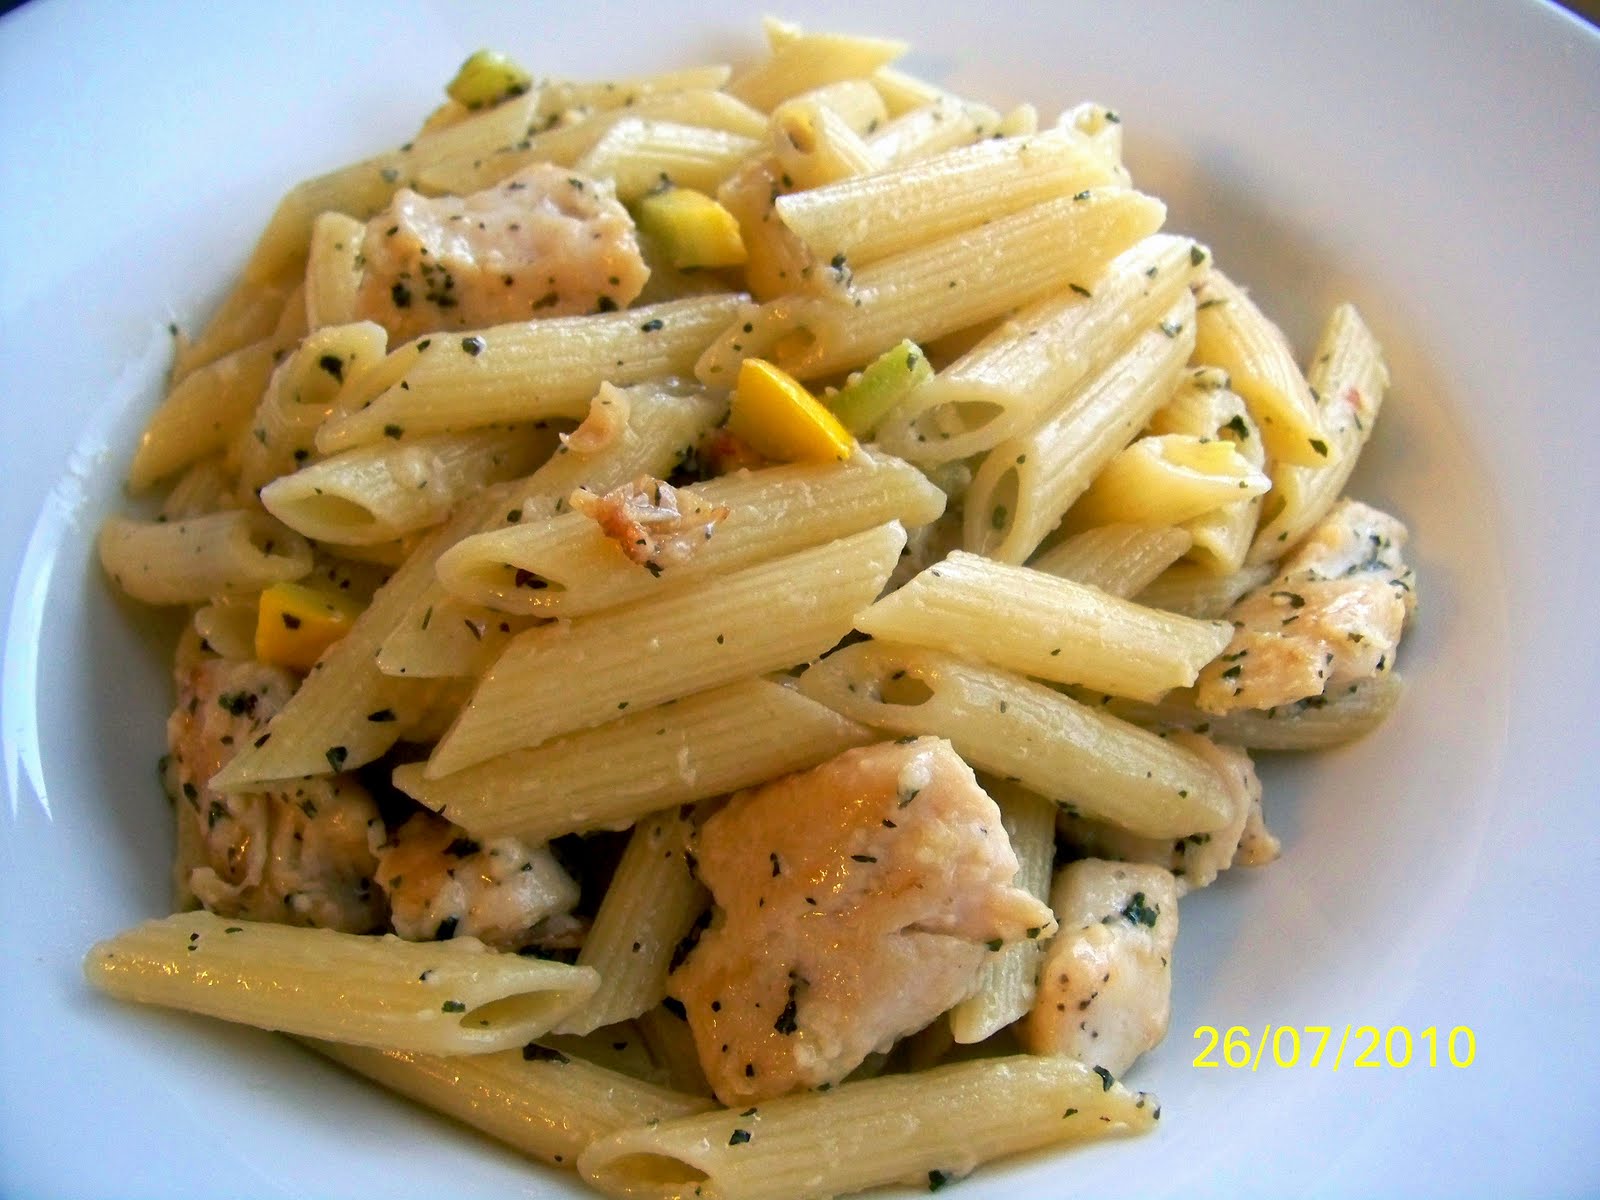 Kitchen Adventures: Garlic Chicken Pasta with Summer Squash